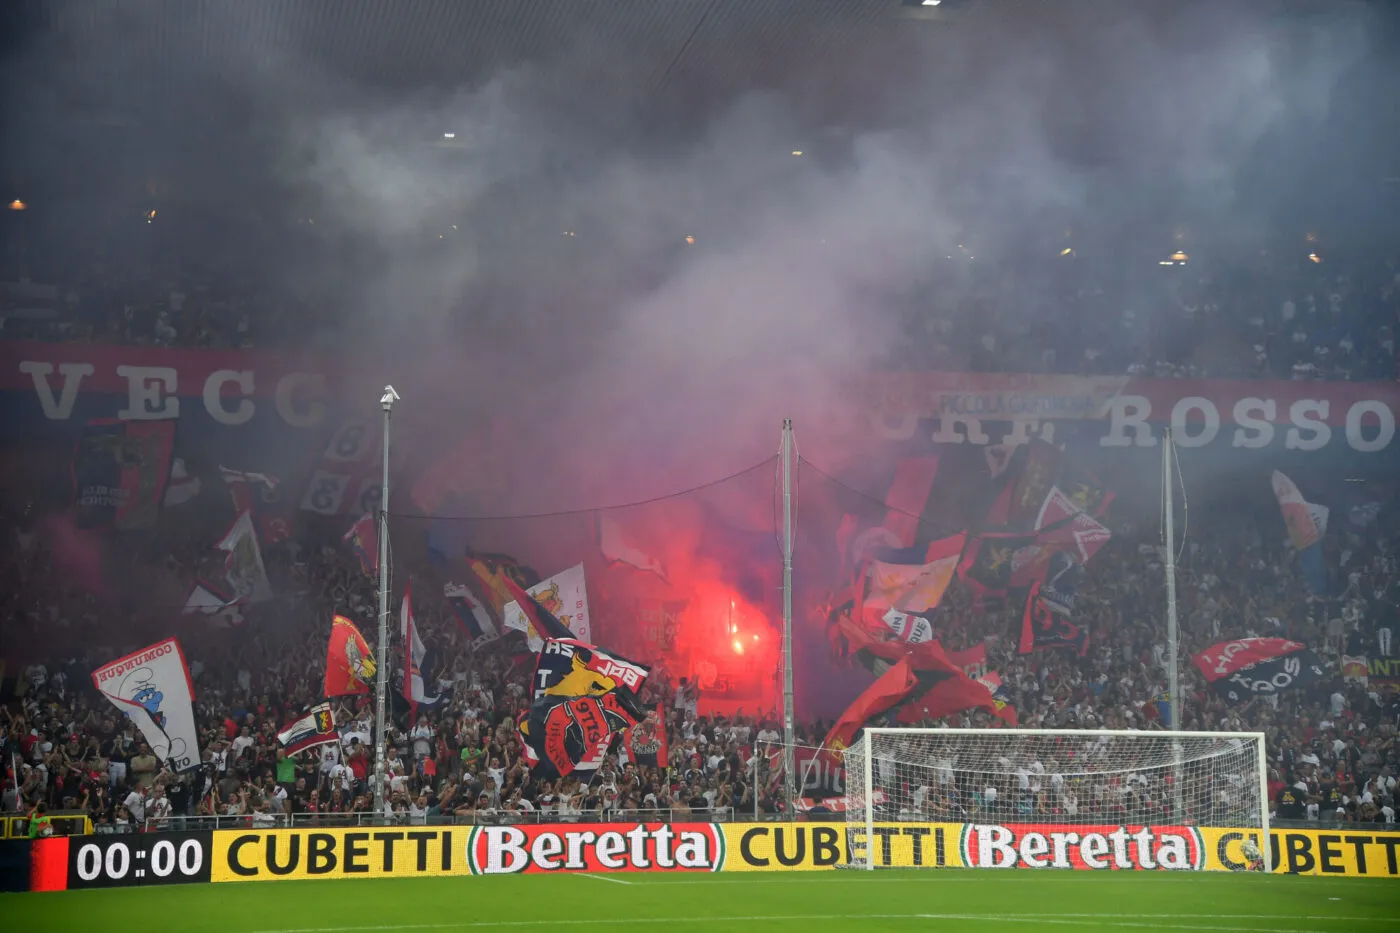 Pour son retour en Serie A, le Genoa fait sauter le record d&rsquo;abonnements de la ville